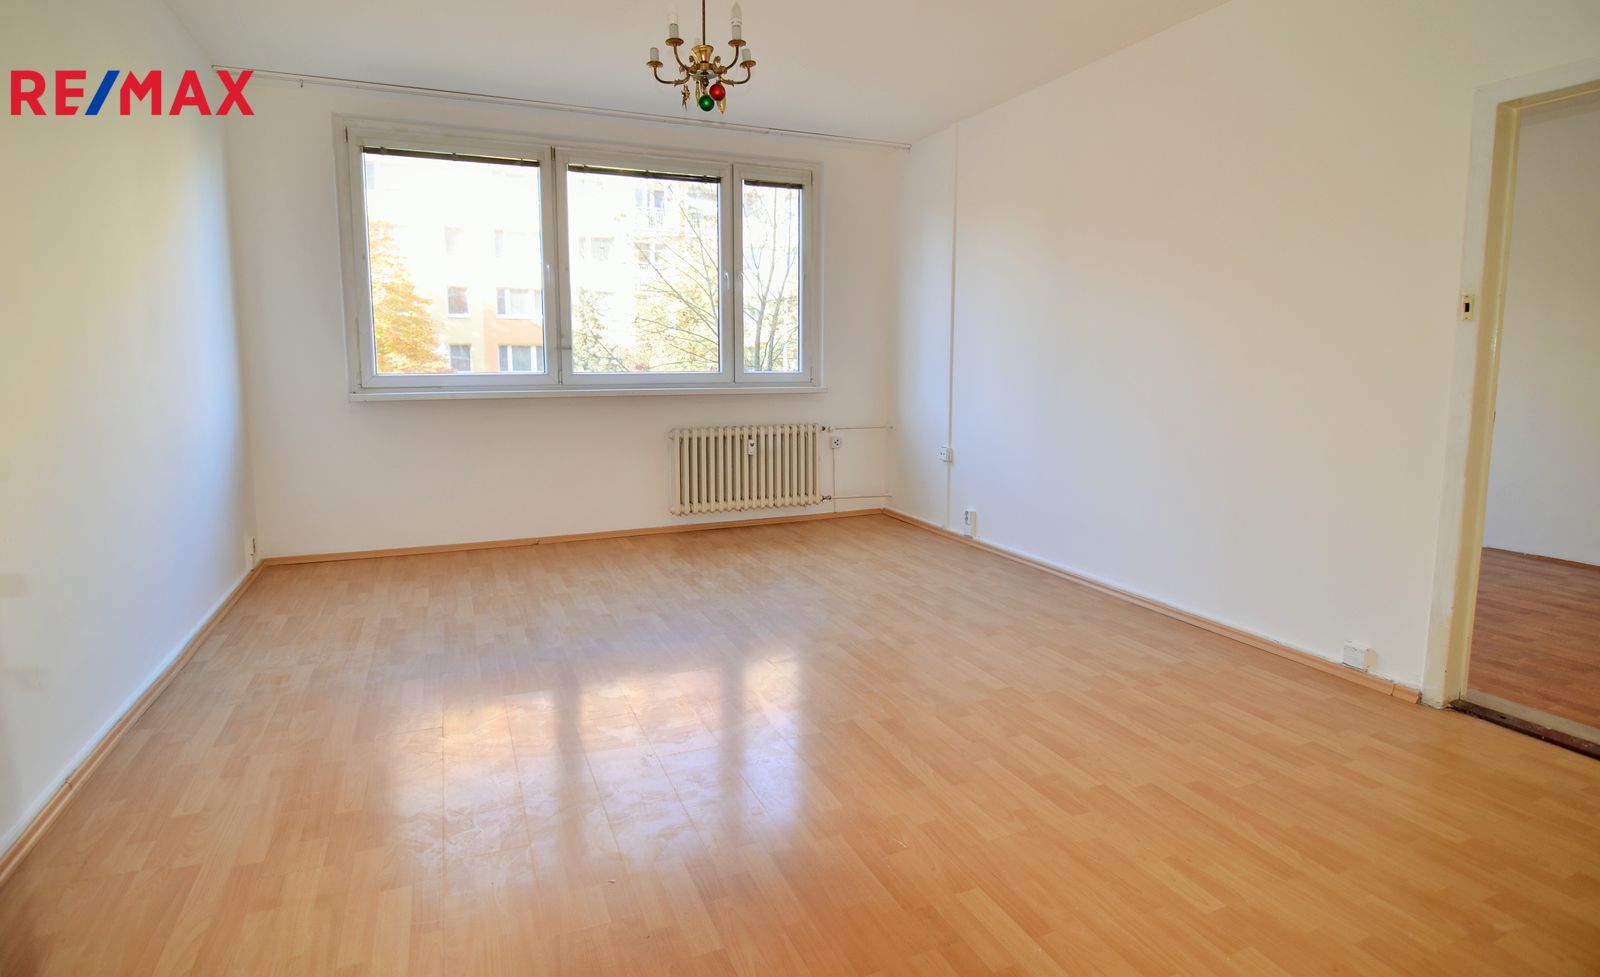 Prodej bytu 4+1 v osobním vlastnictví, 91 m2, Praha 5 - Hlubočepy